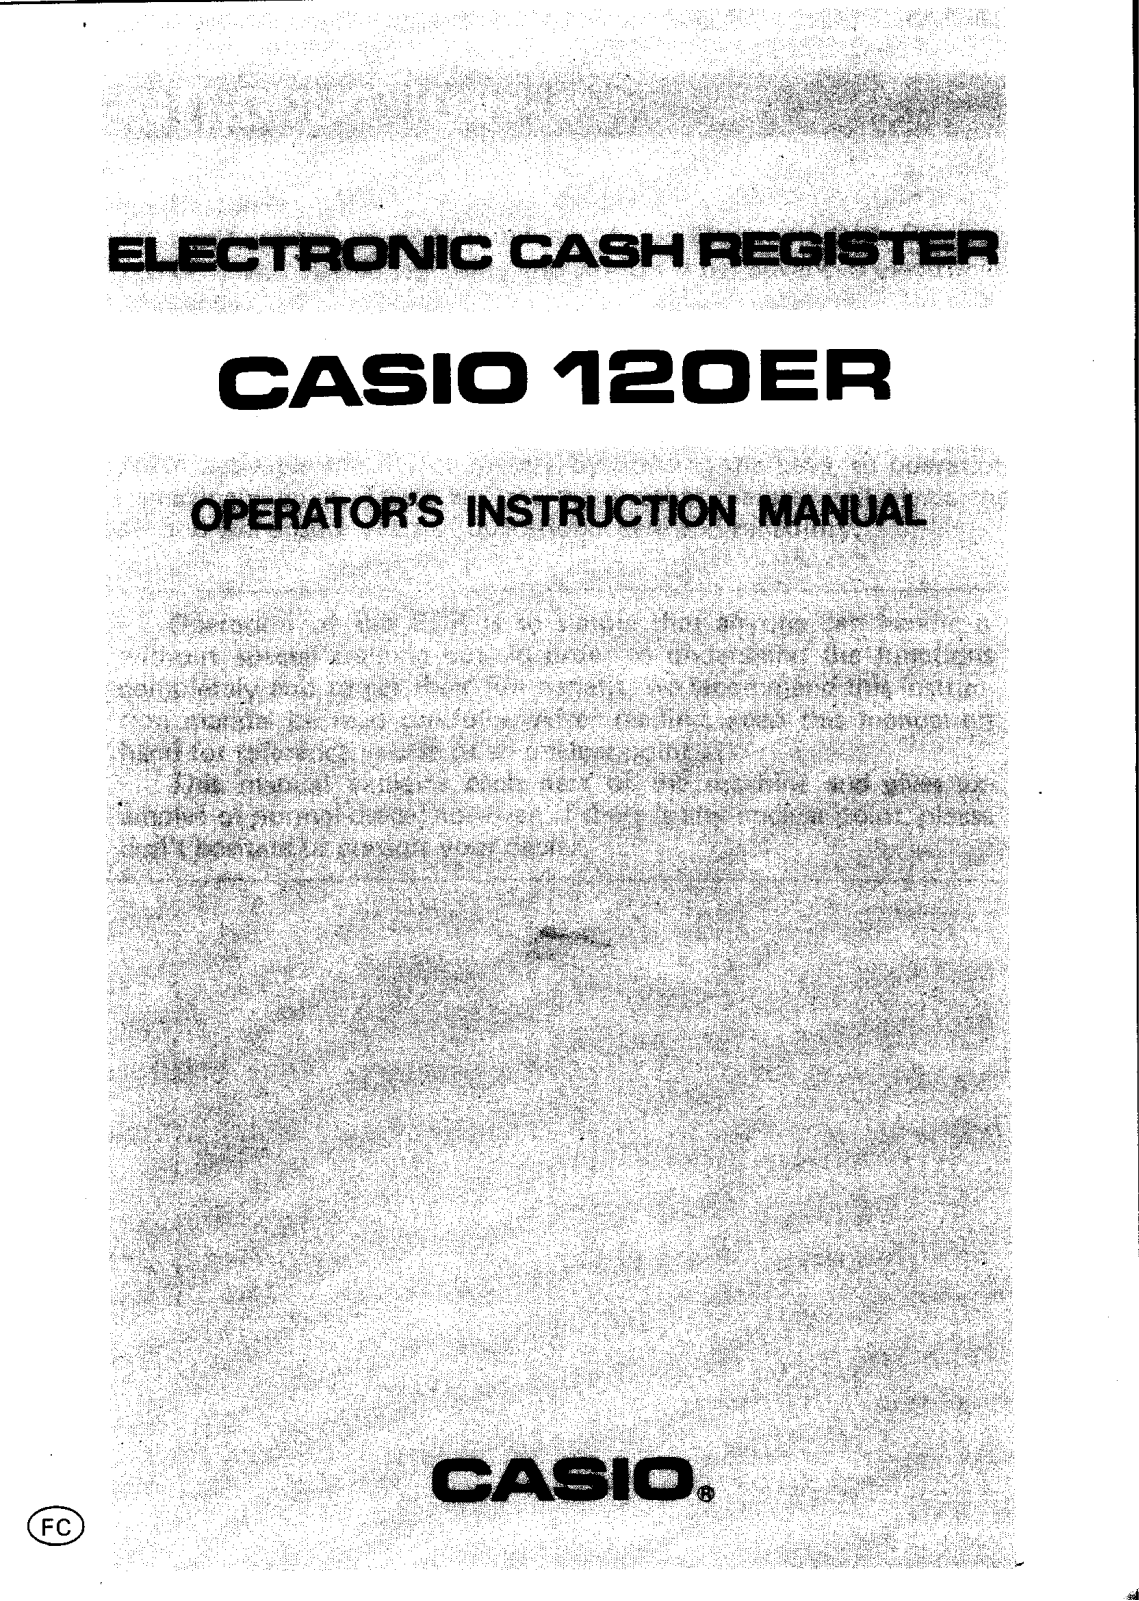 Casio 120ER Owner's Manual